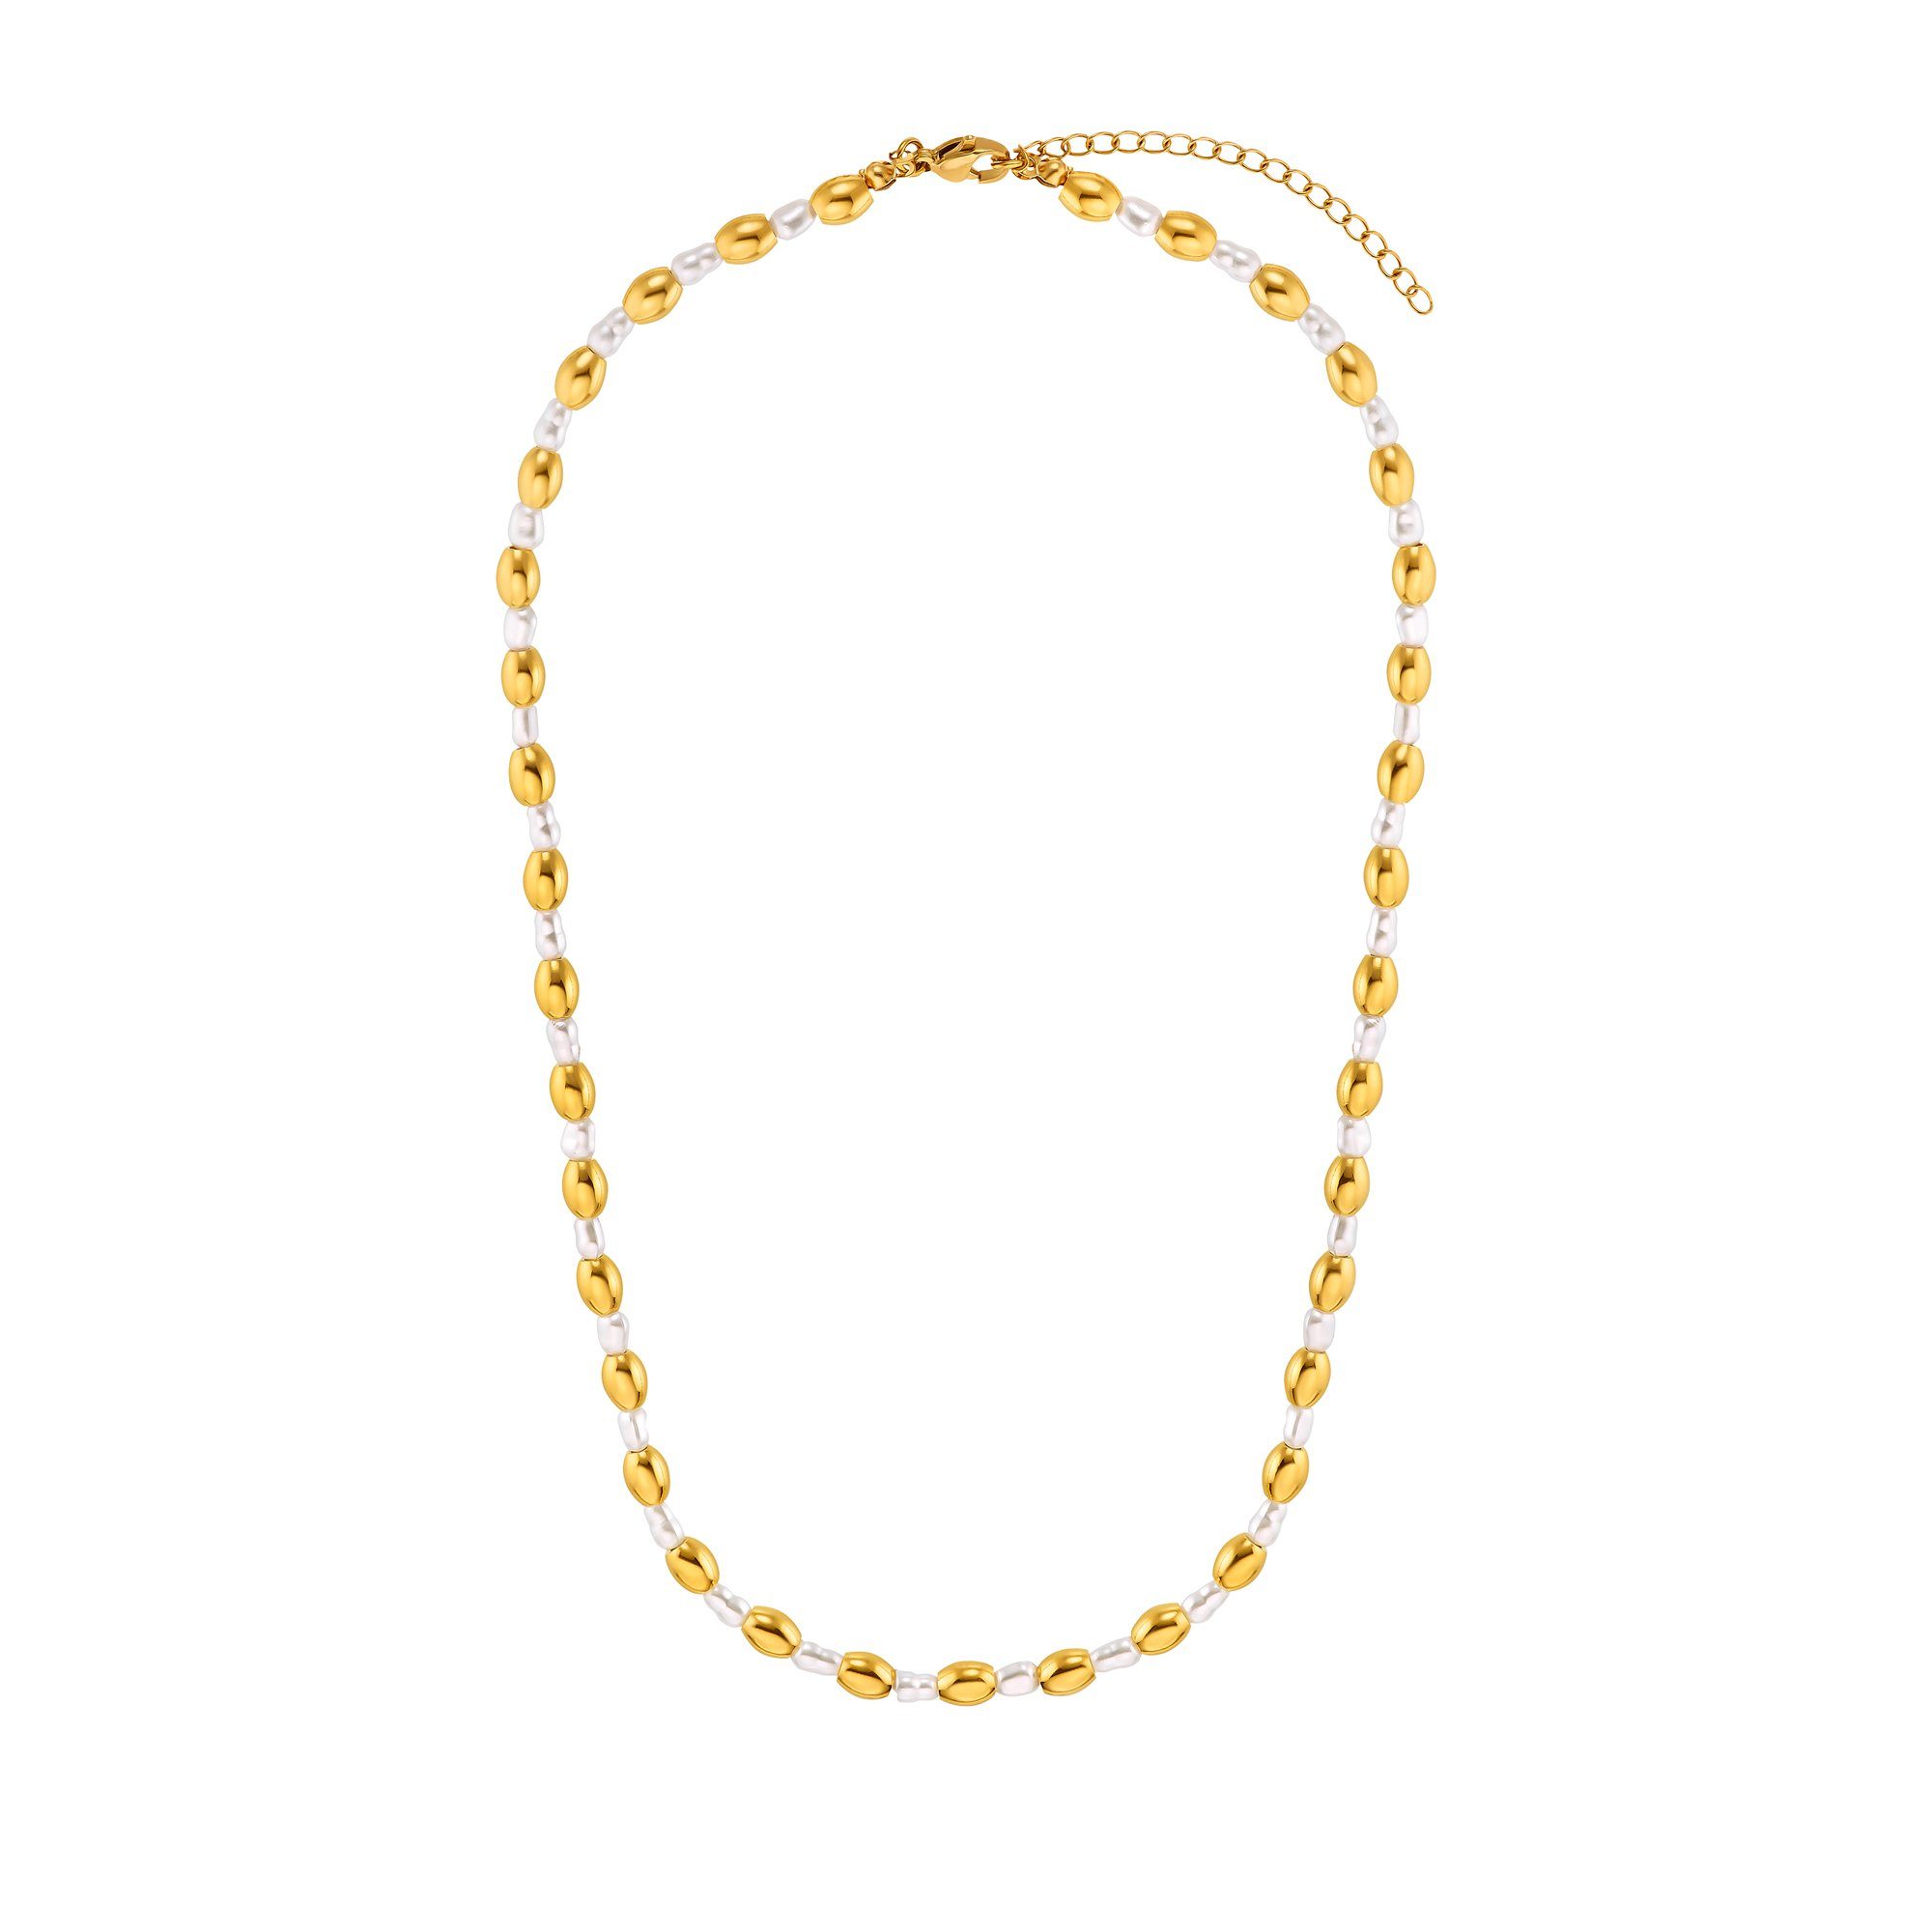 Heideman Collier Maya silberfarben poliert (inkl. Geschenkverpackung), Halskette mit ausgefallenen Perlen goldfarben